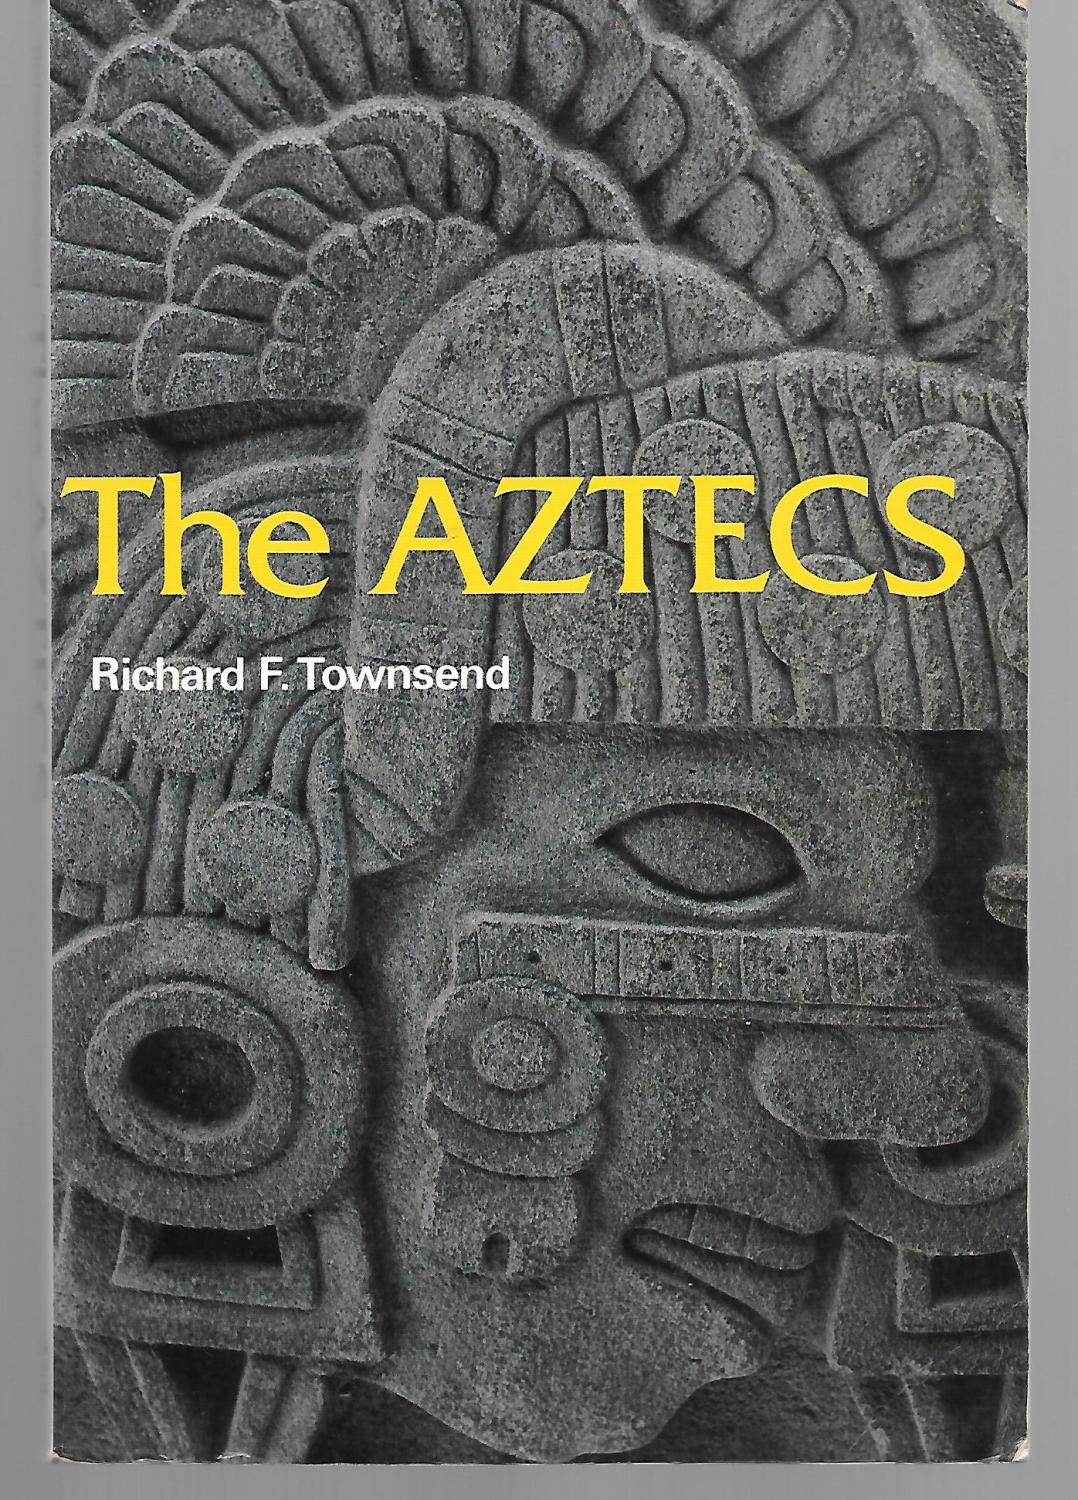 The Aztecs - Richard Townsend